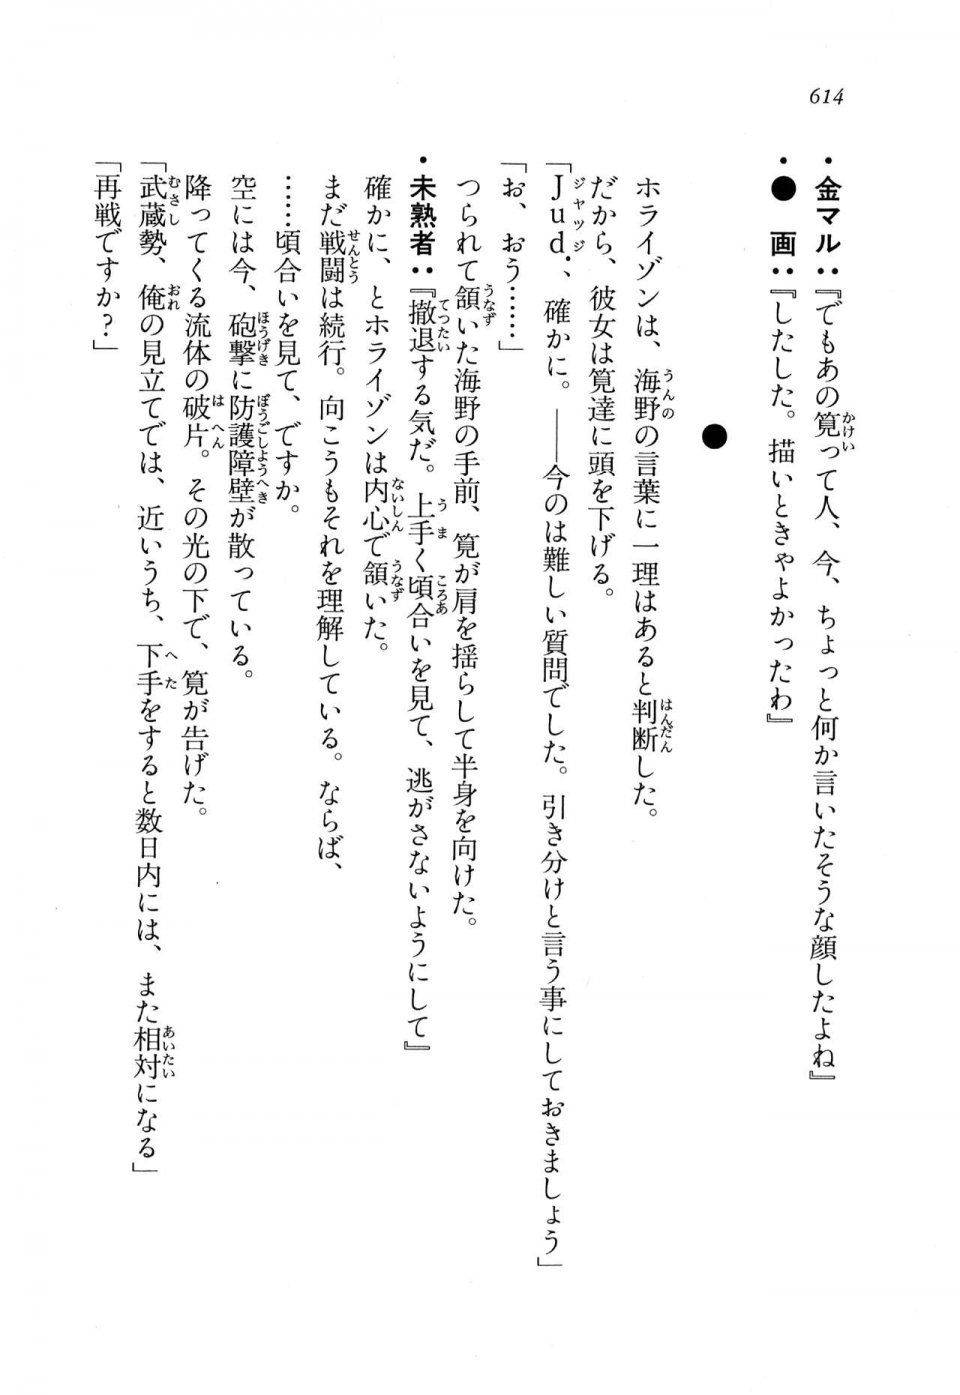 Kyoukai Senjou no Horizon LN Vol 11(5A) - Photo #614